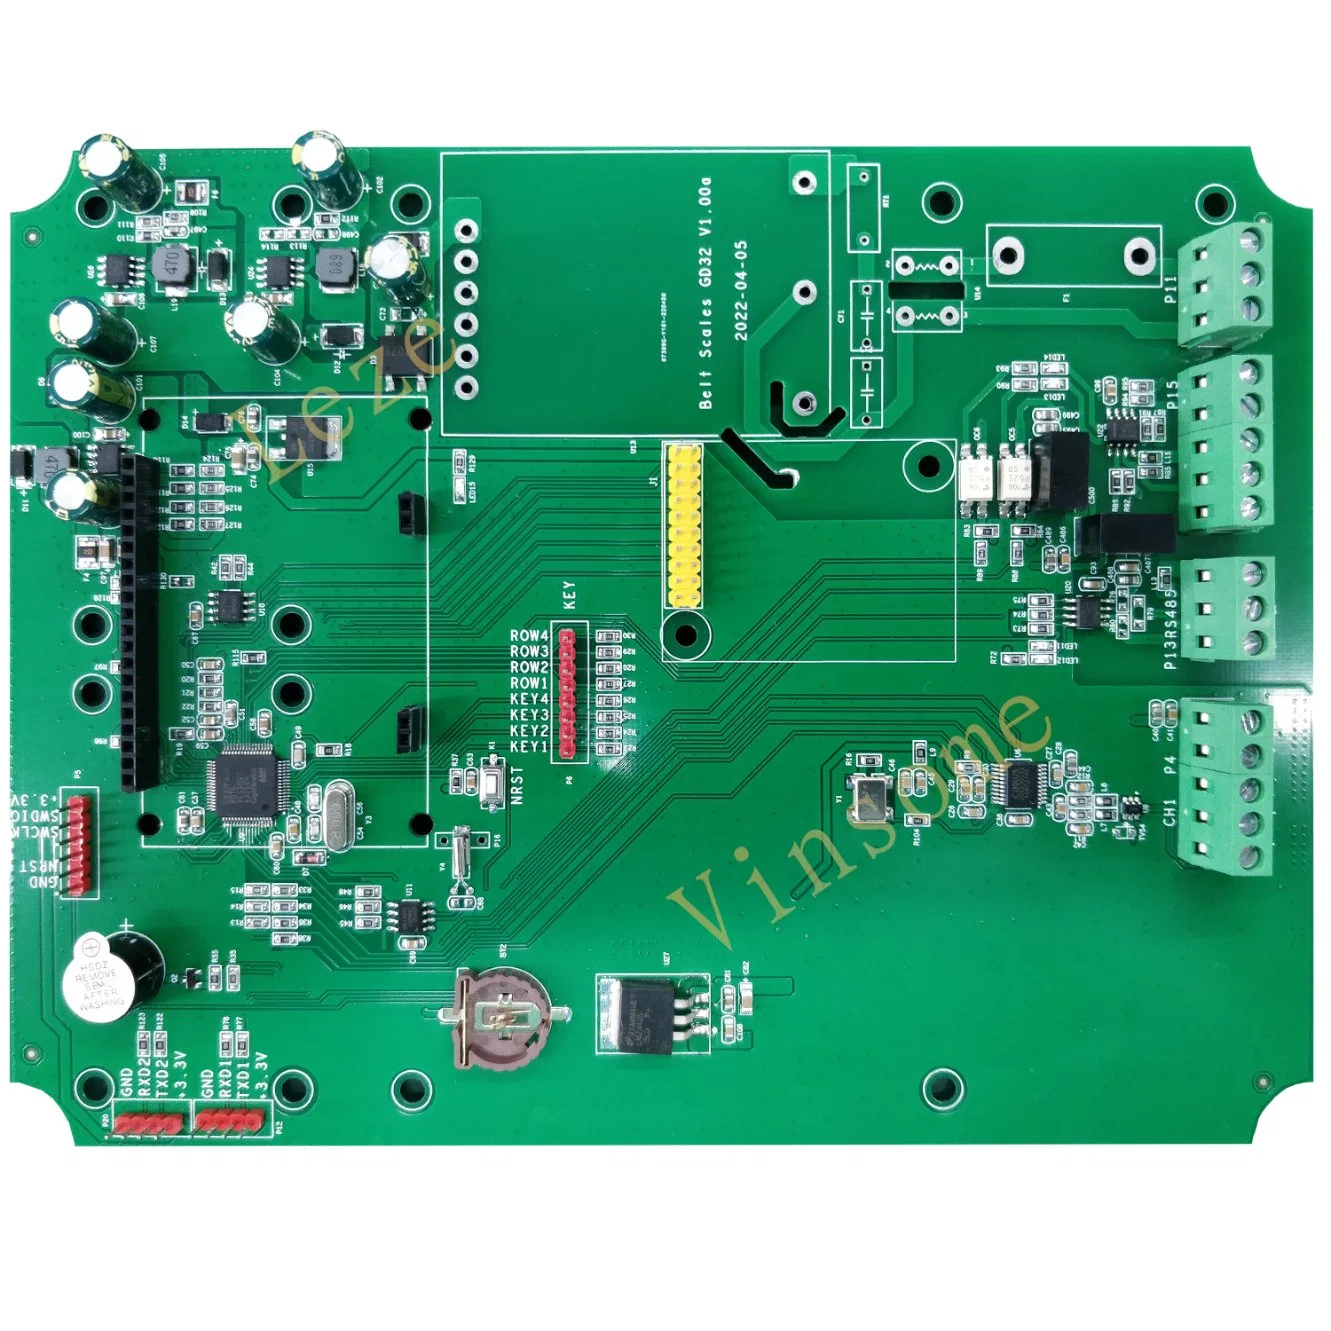 Gd32 V1,00 SMD-Löttechnik Leiterplatten-Design Elektronik Leiterplatte aus einer Hand Service